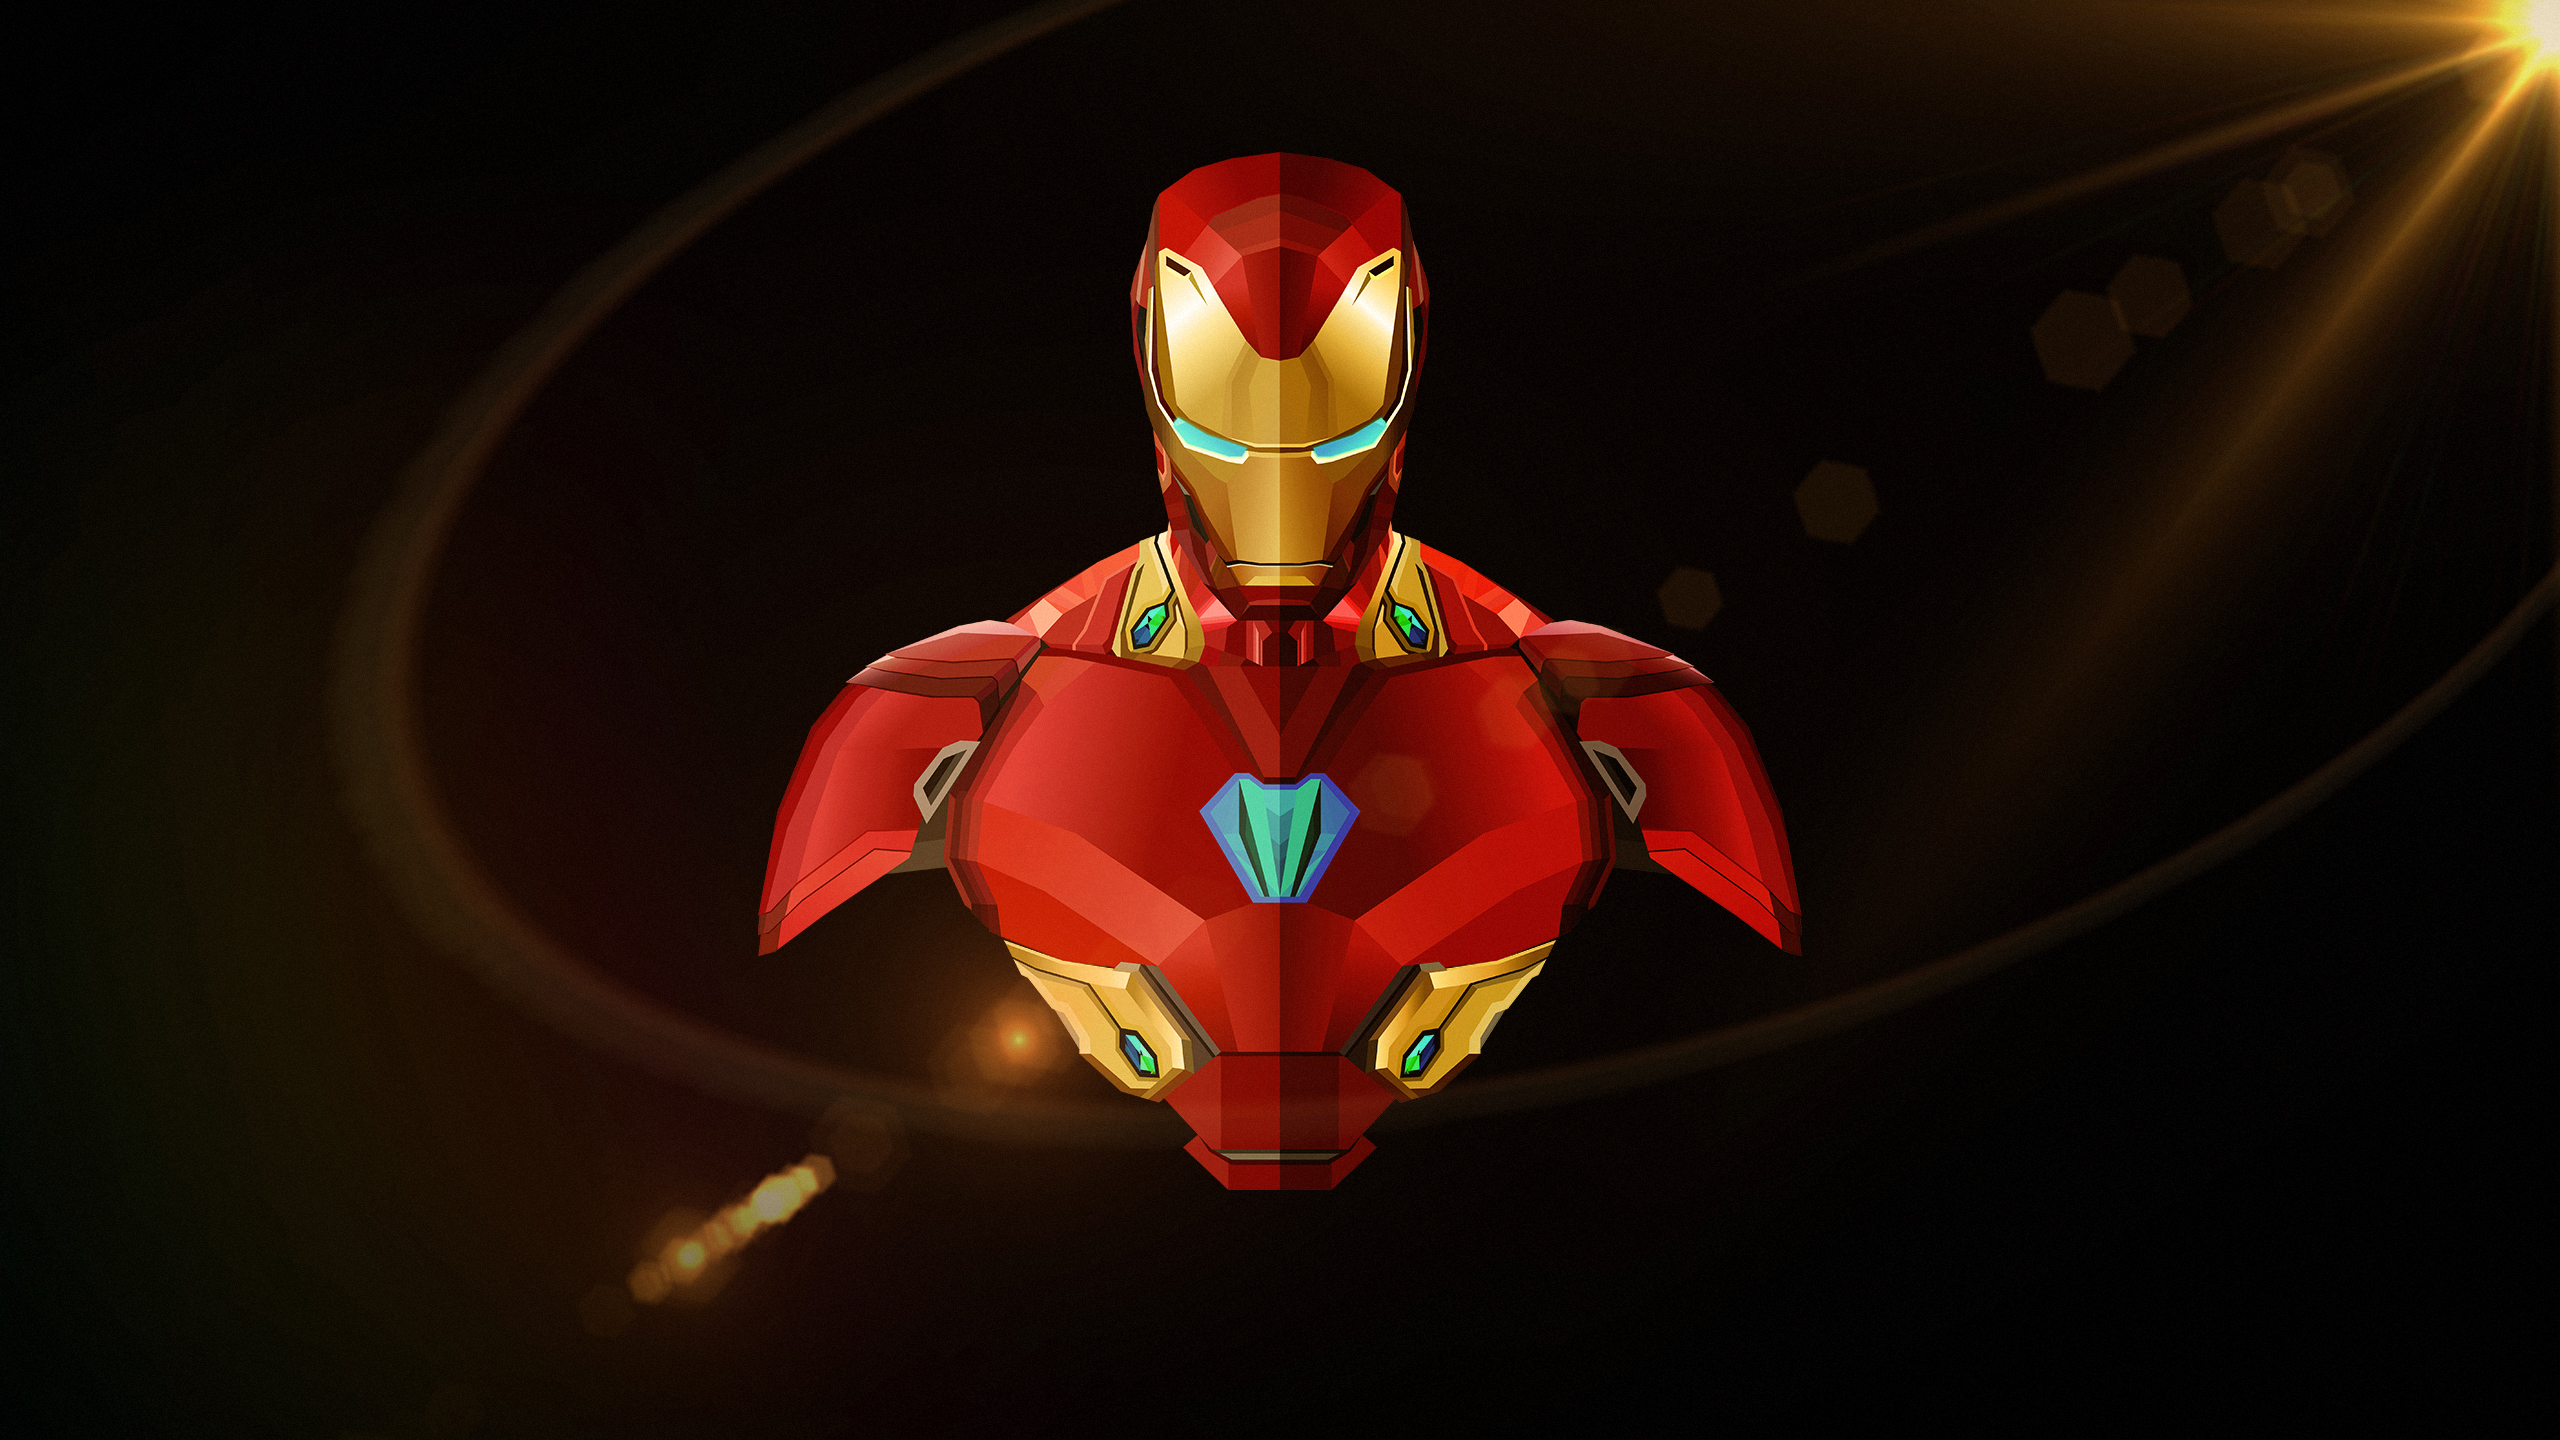 Alternative Desktop Background with Iron Man HD Wallpaper Wallpaper. Wallpaper Download. High Resolution Wallpaper